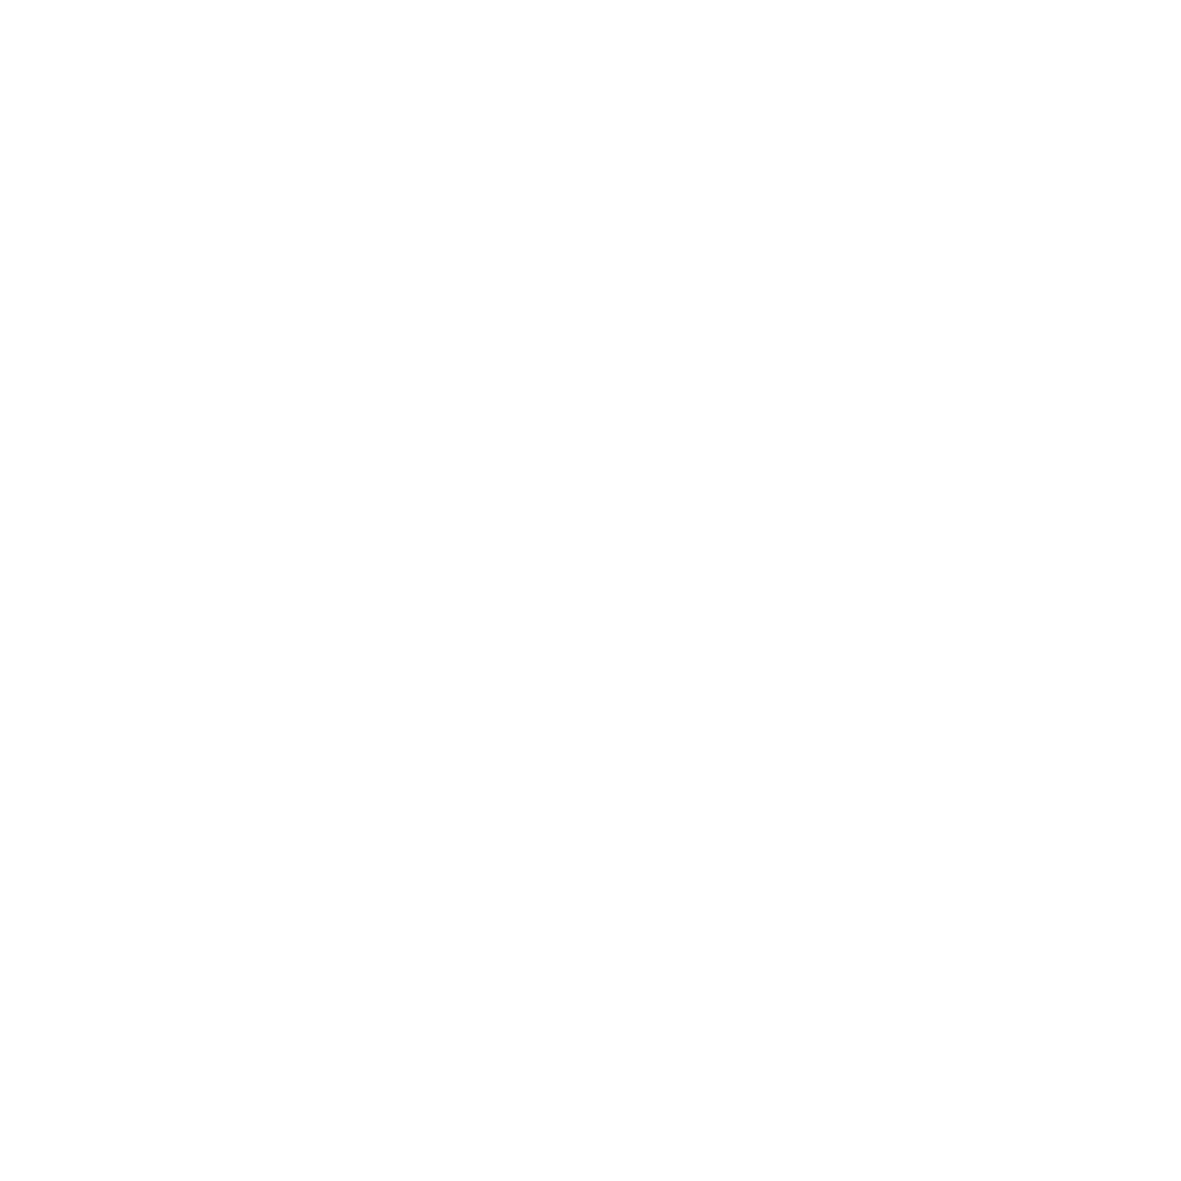 MURIA ASESSORS